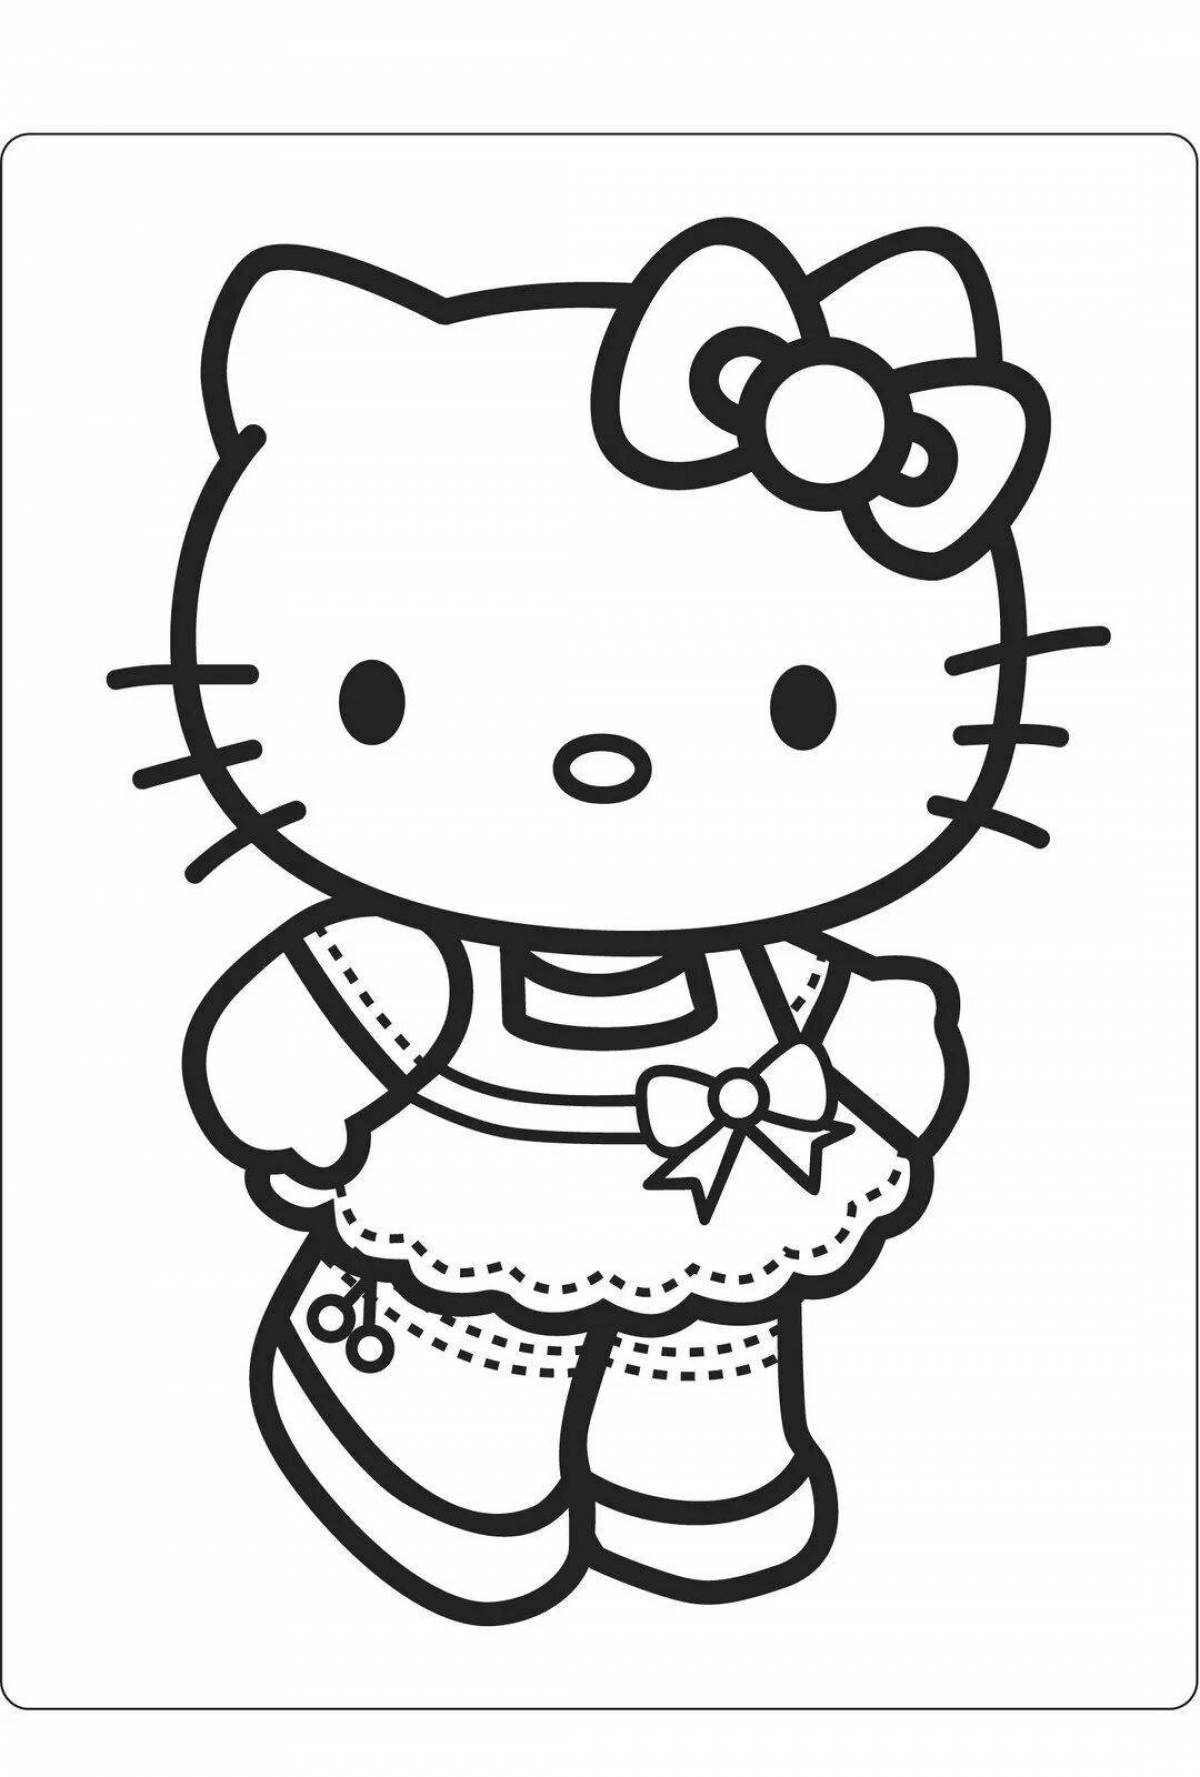 Юношеская раскраска hello kitty с одеждой